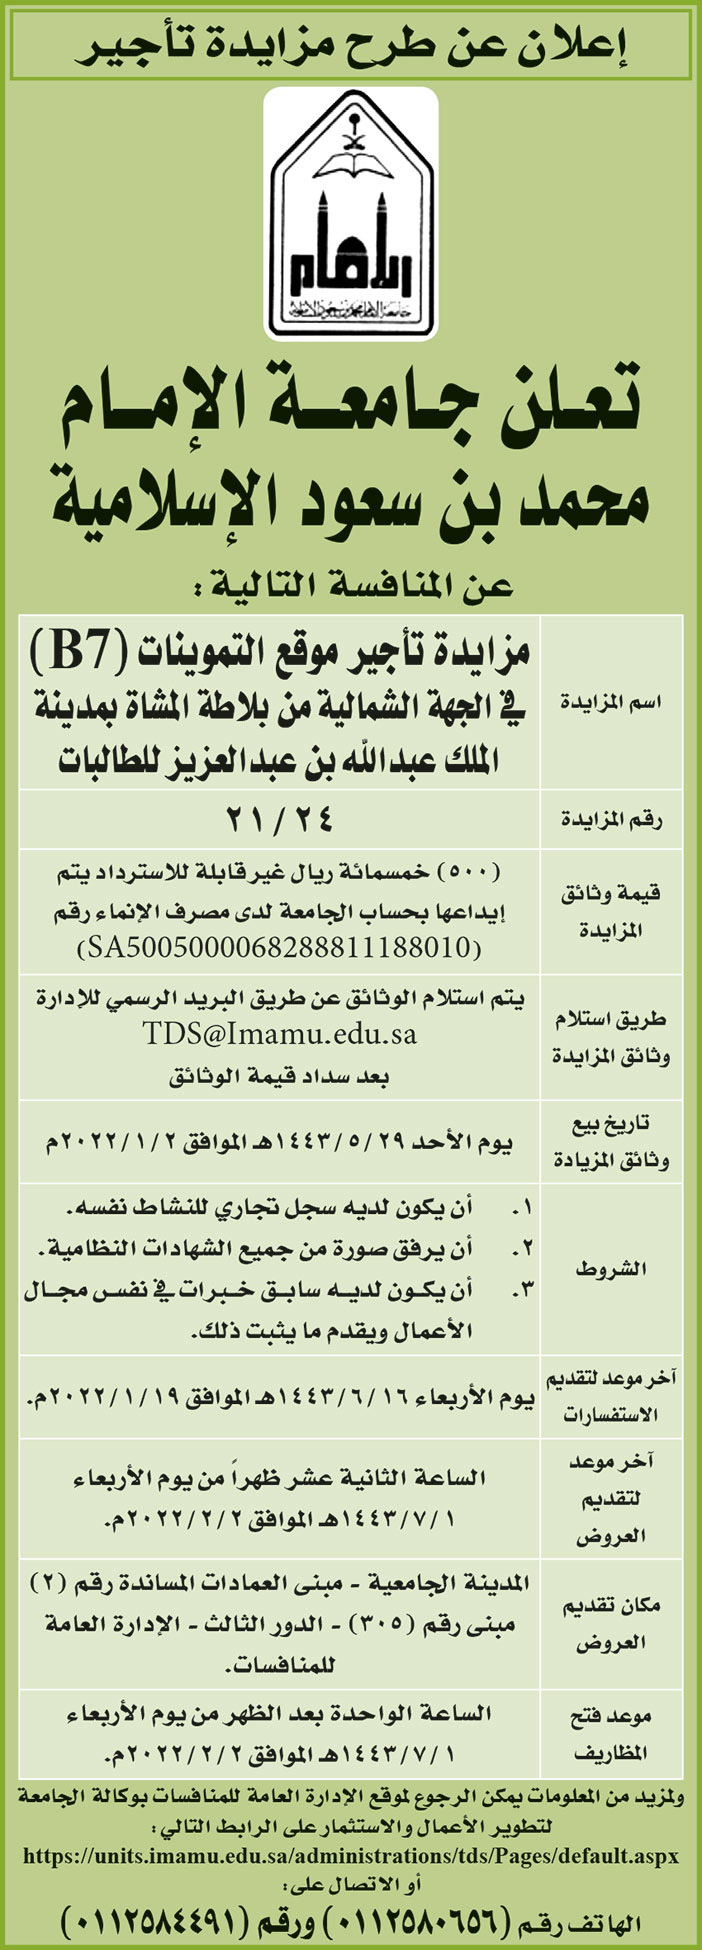 جامعة الإمام محمد بن سعود الإسلامية تطرح منافسة مزايدة تأجير موقع التموينات (B7) في الجهة الشمالية من بلاطة المشاة بمدينة الملك عبدالعزيز للطالبات 